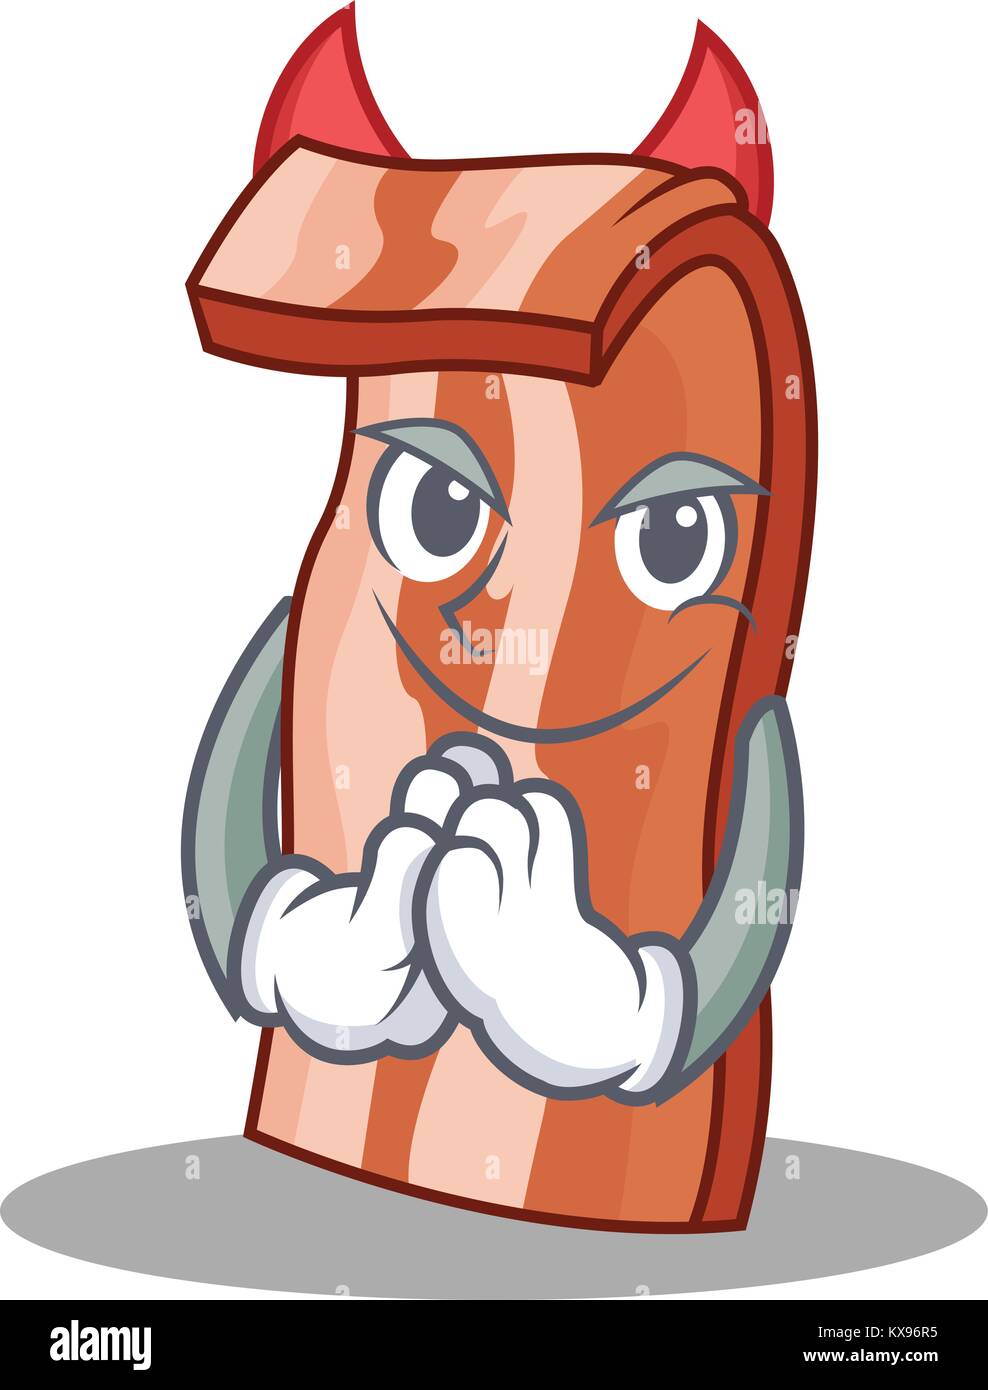 Devil bacon mascot cartoon style Stock Vector